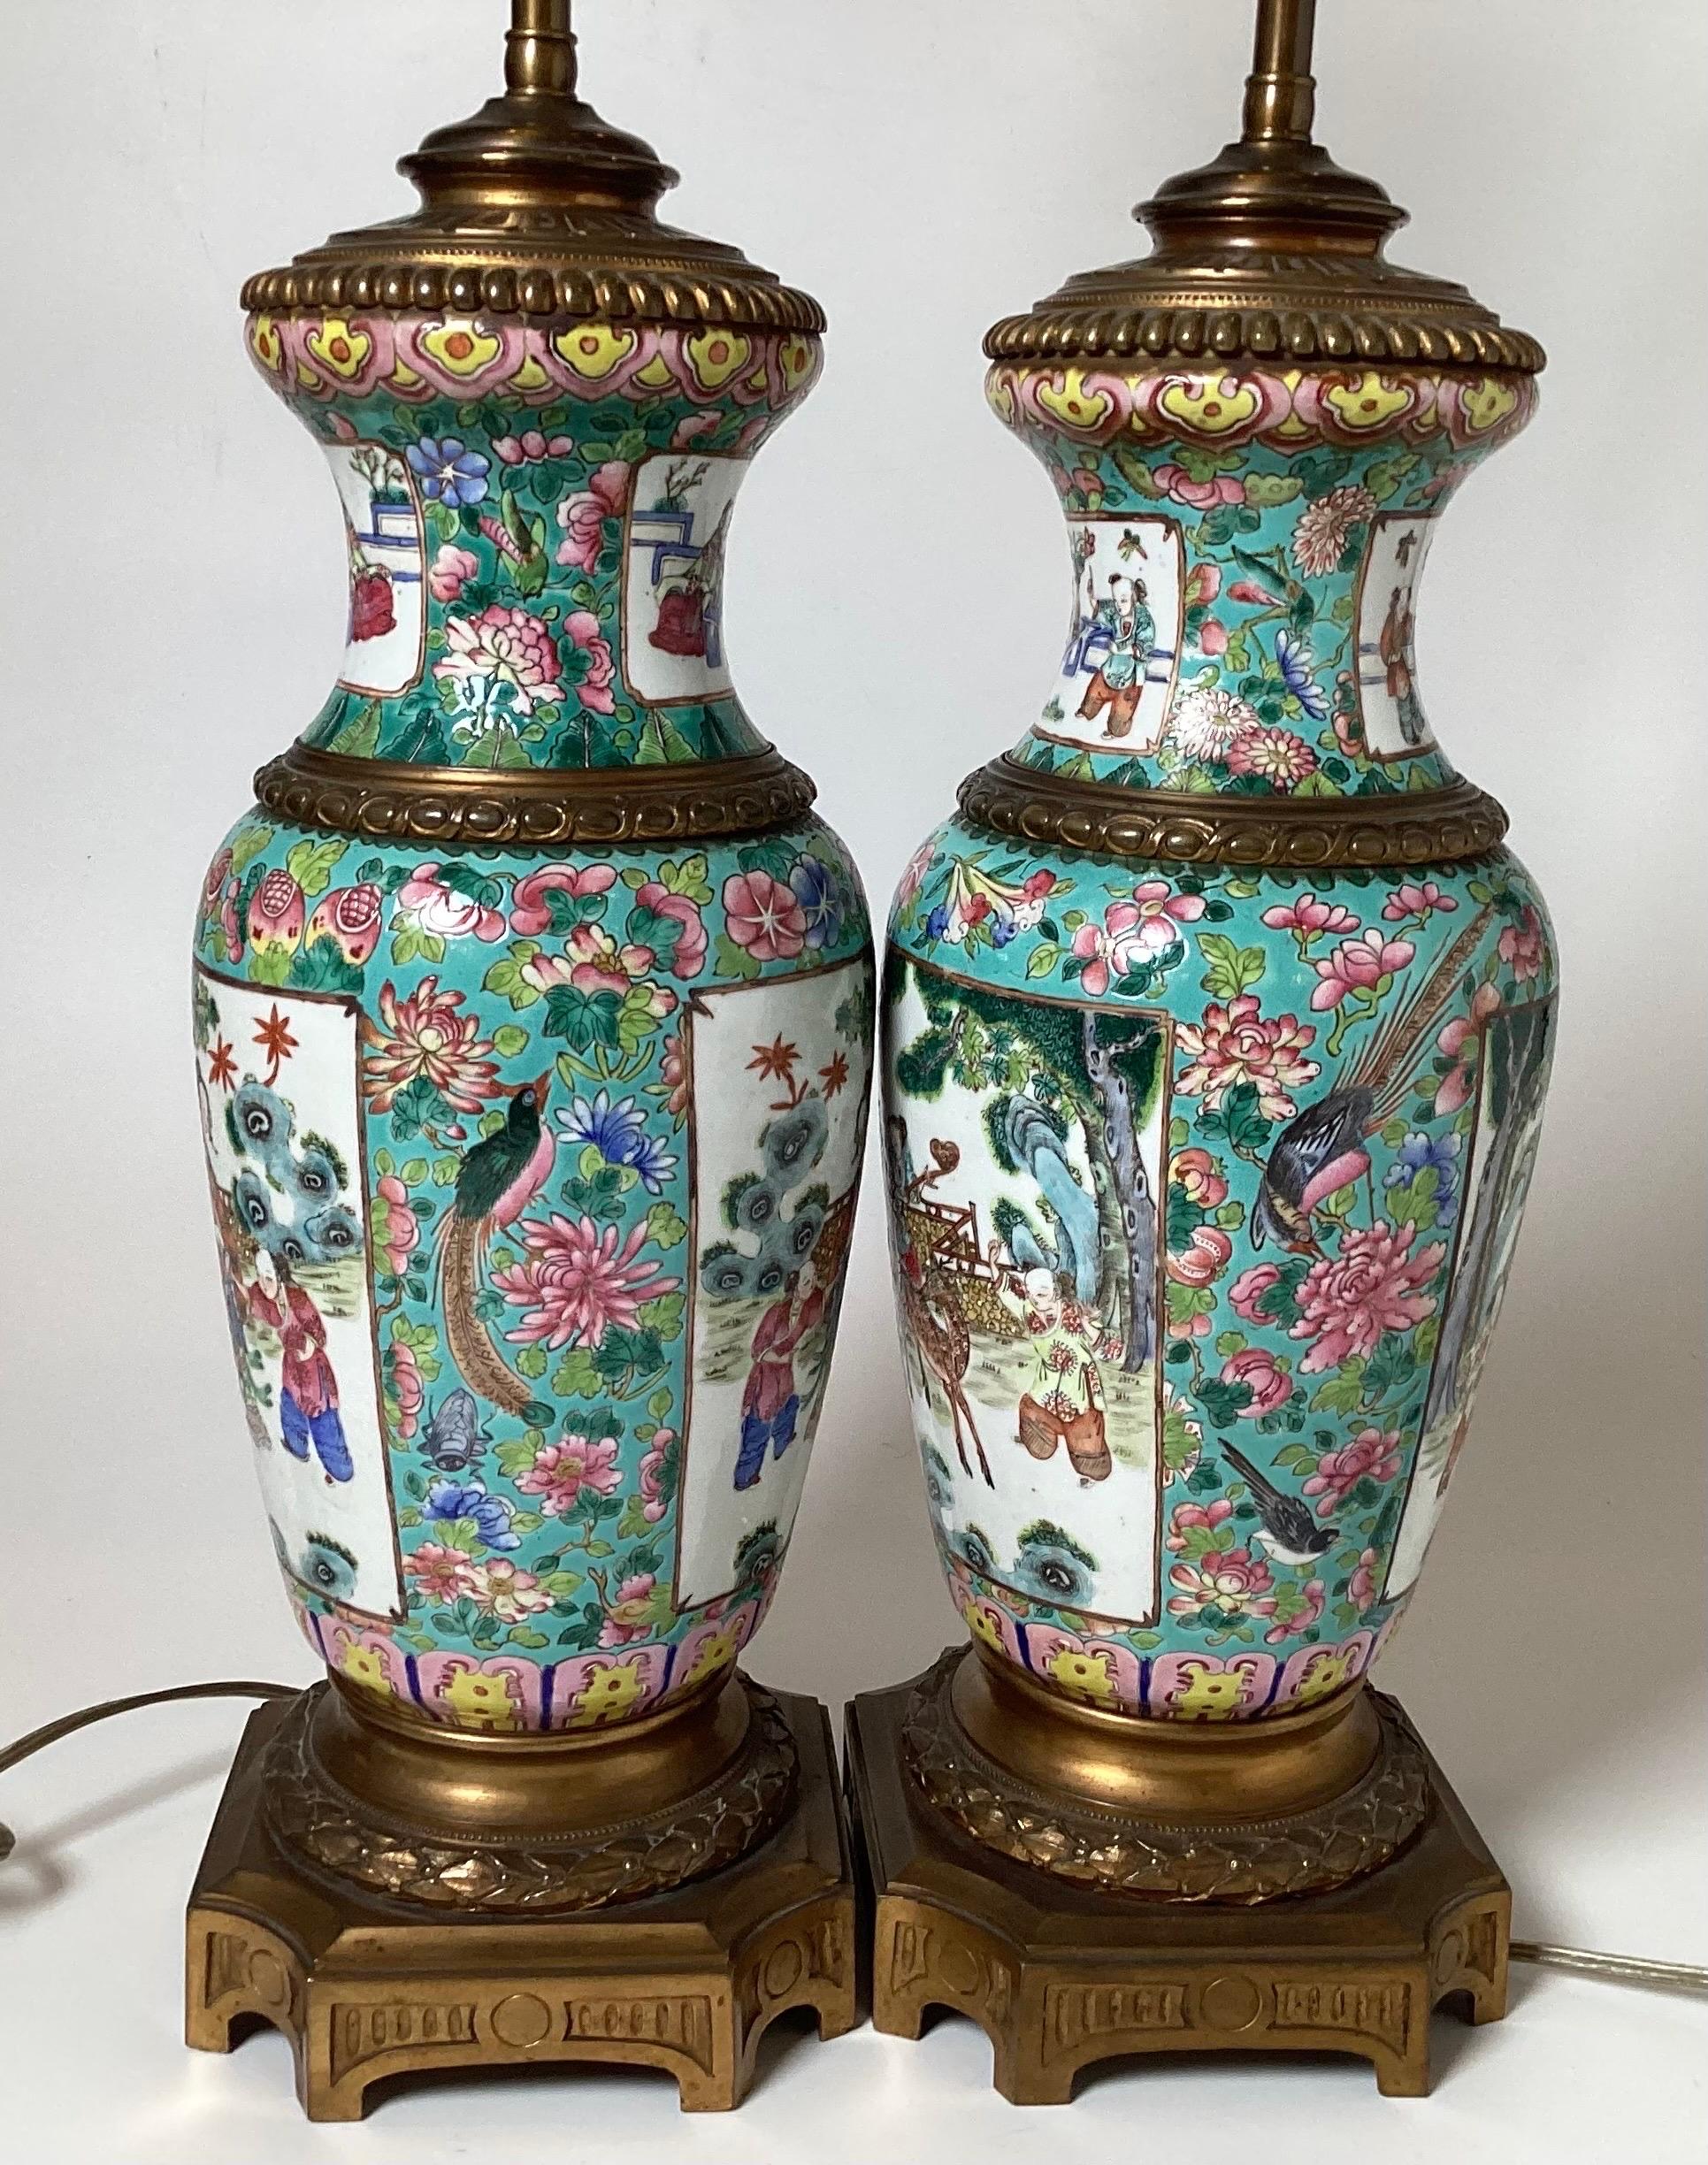 Une paire remarquable de vases en porcelaine d'exportation chinoise Rose Mandarine peints à la main au début du 19e siècle, qui servent maintenant de lampes.  Les vases datent d'avant 1850 et ont été éclairés dans les années 1920 avec d'élégantes